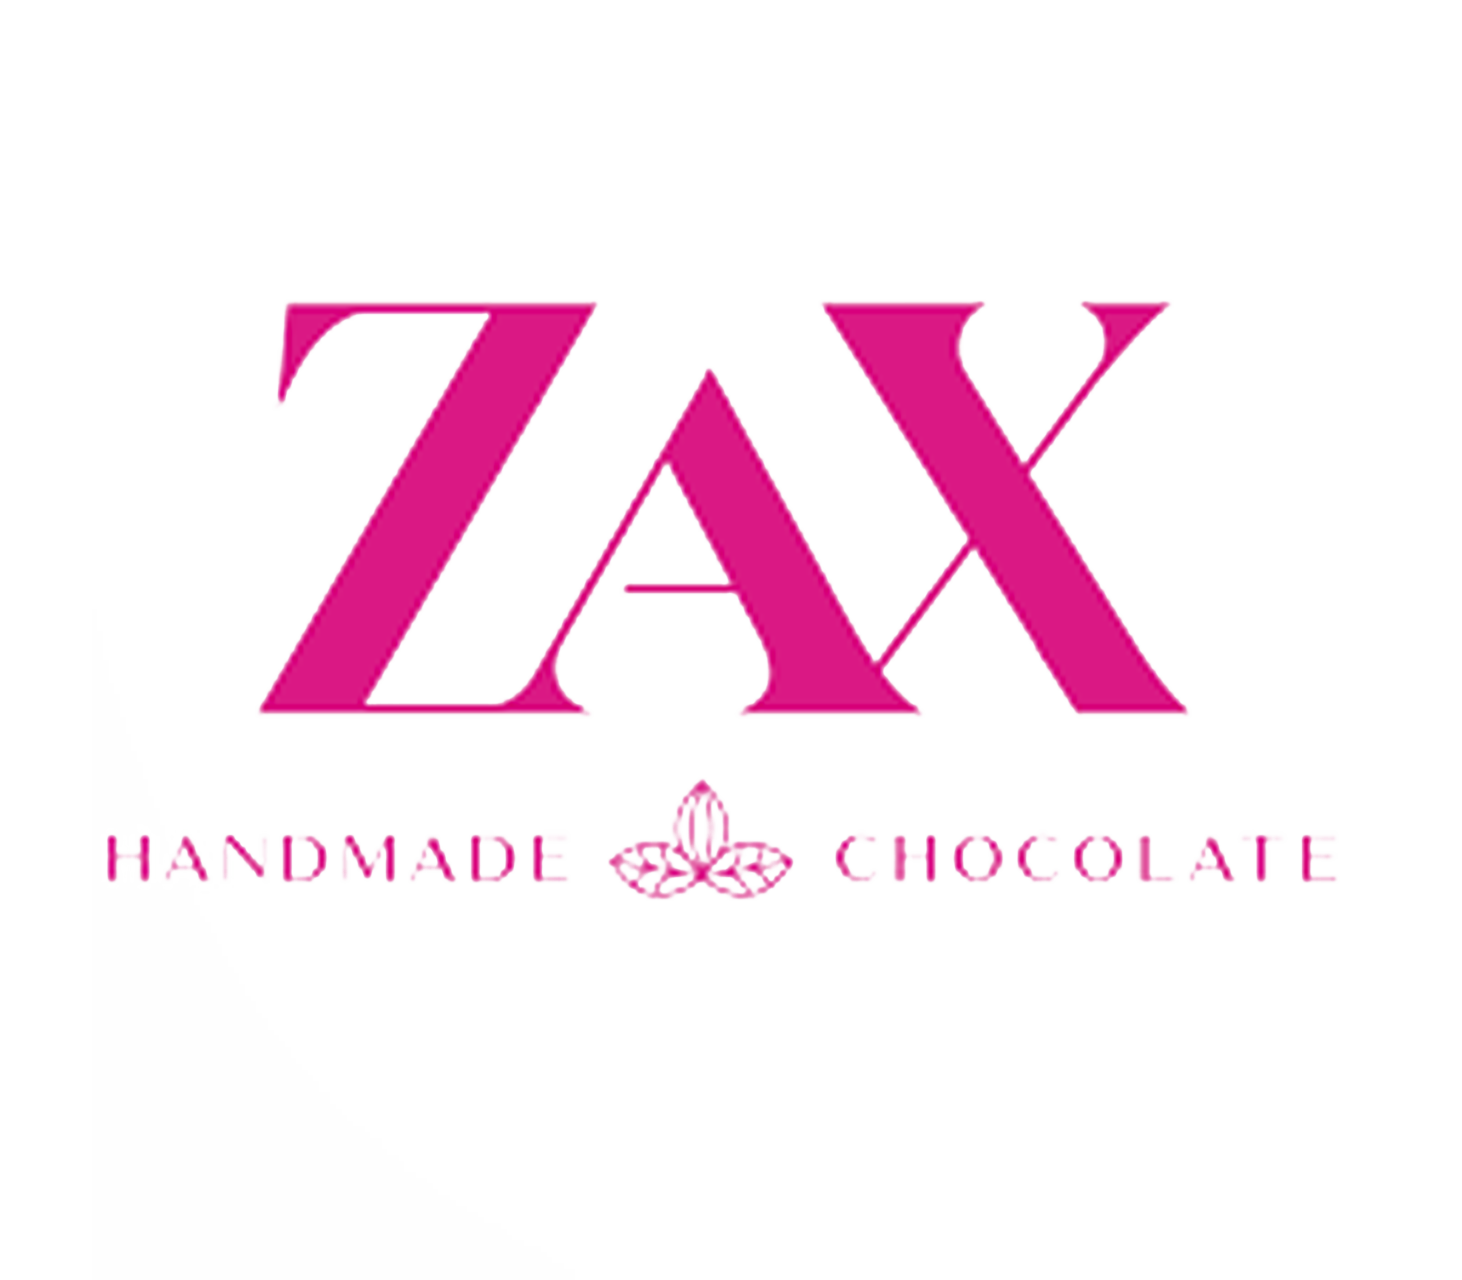 reklám videó - Zax csoki